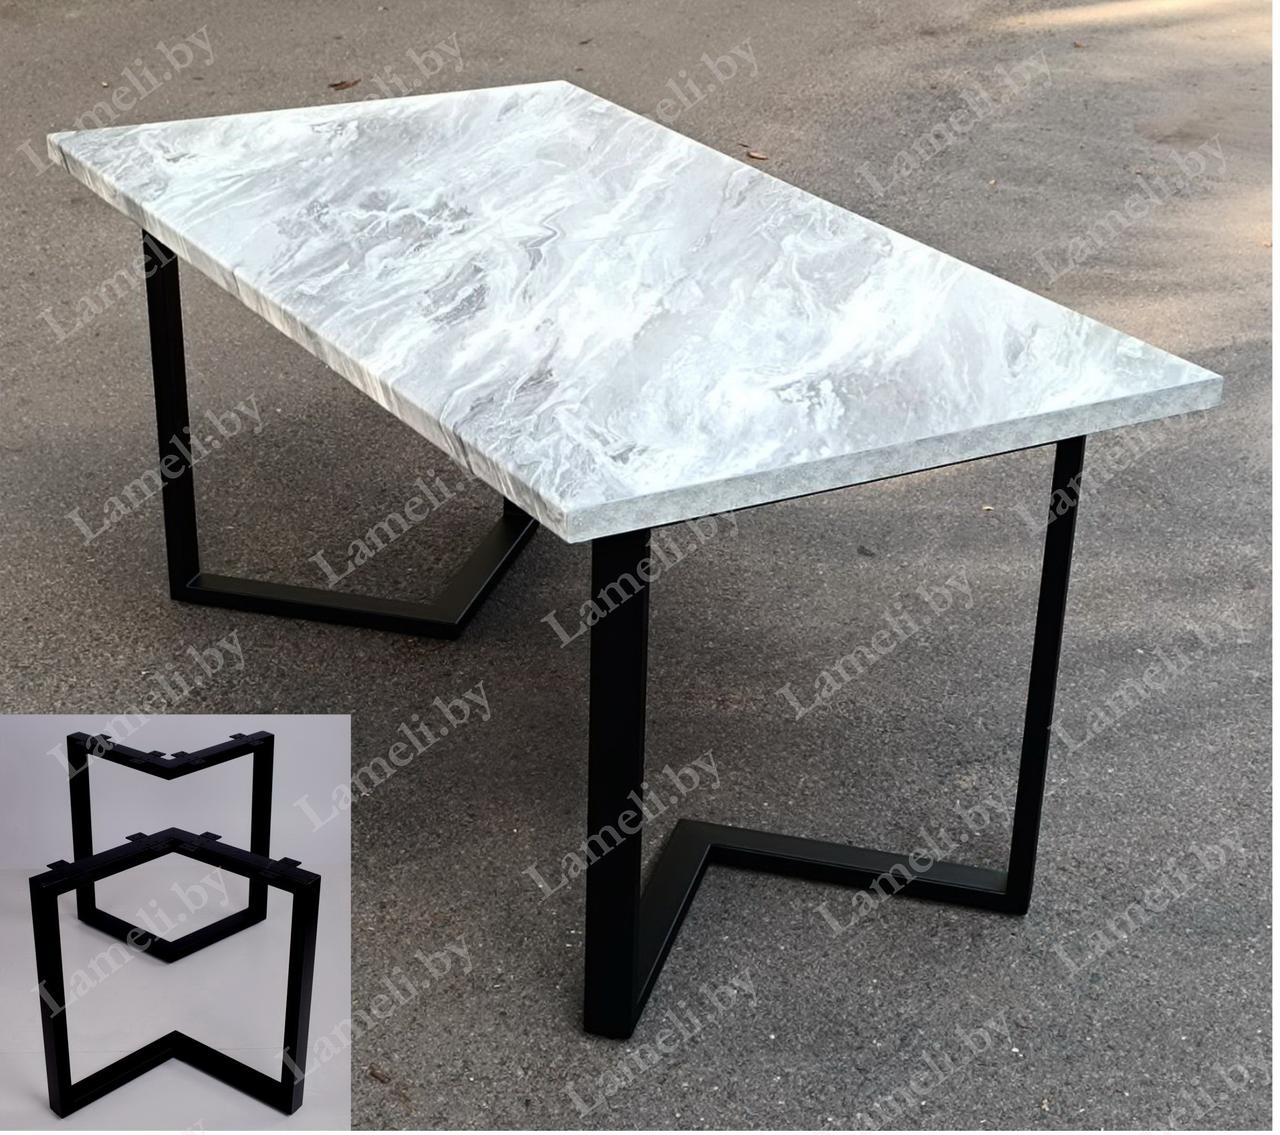 Стол обеденный на металлокаркасе серии "Z" из постформинга, массива дуба или ЛДСП с выбором размера и цвета